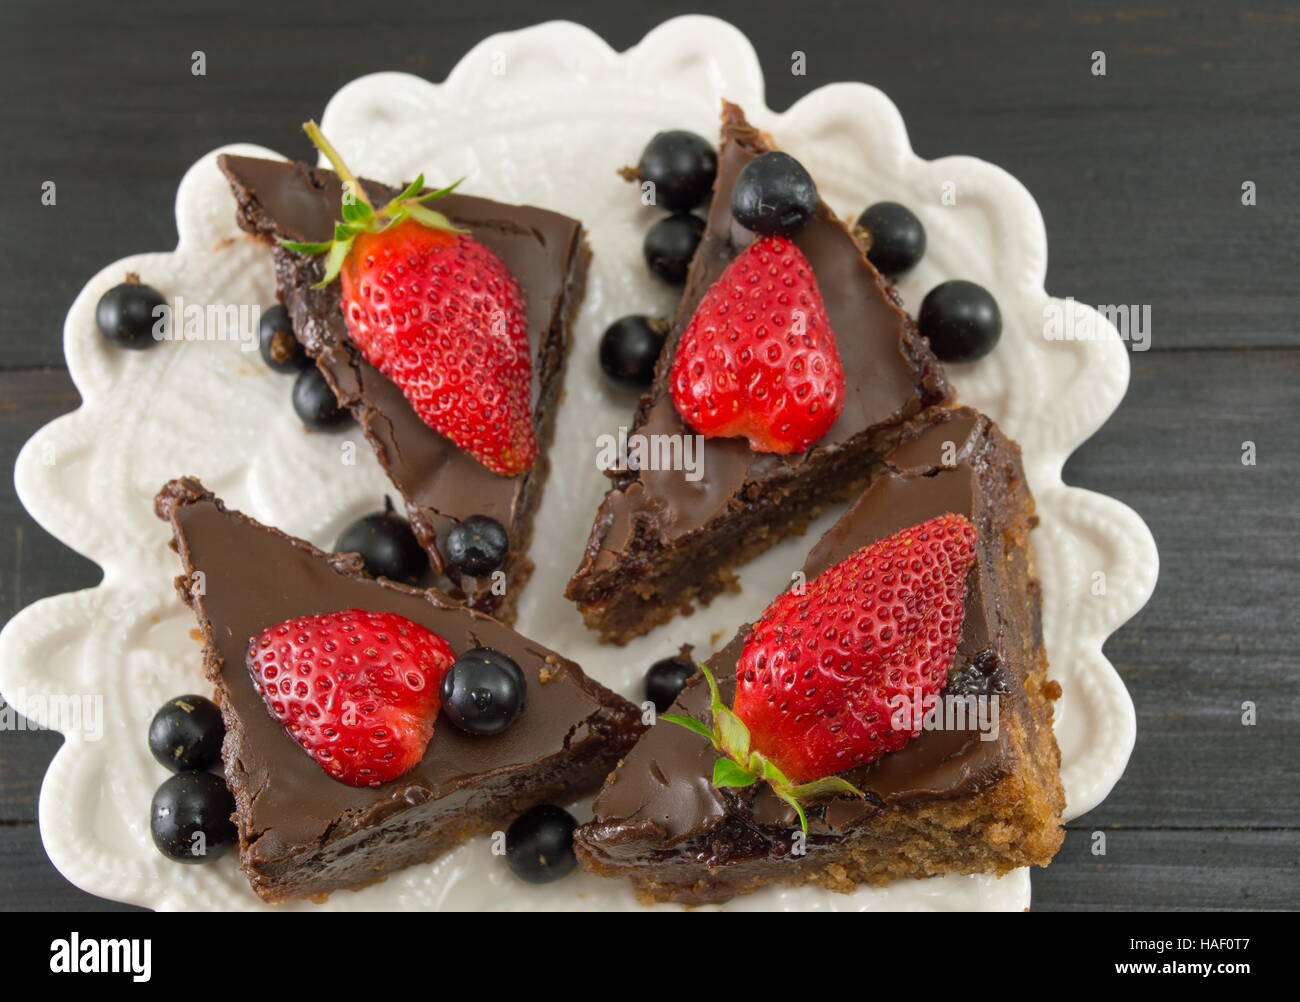 Tranches de gâteau au chocolat avec des fraises entières sur le dessus Banque D'Images